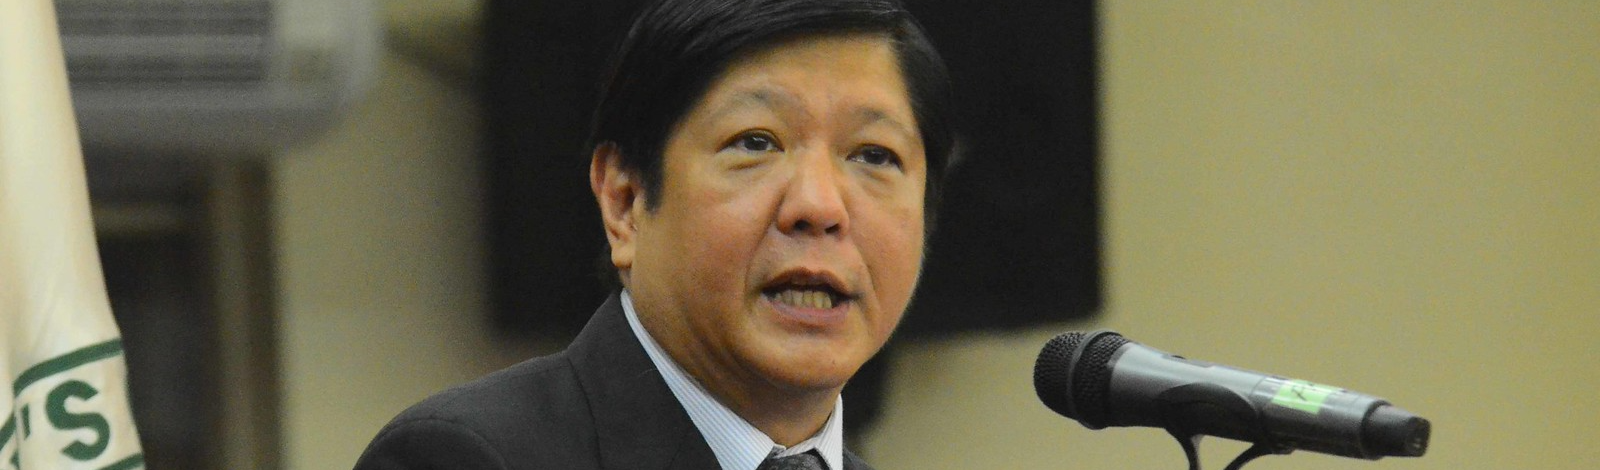 Novo presidente das Filipinas é membro de uma das cleptocracias mais notórias da Ásia